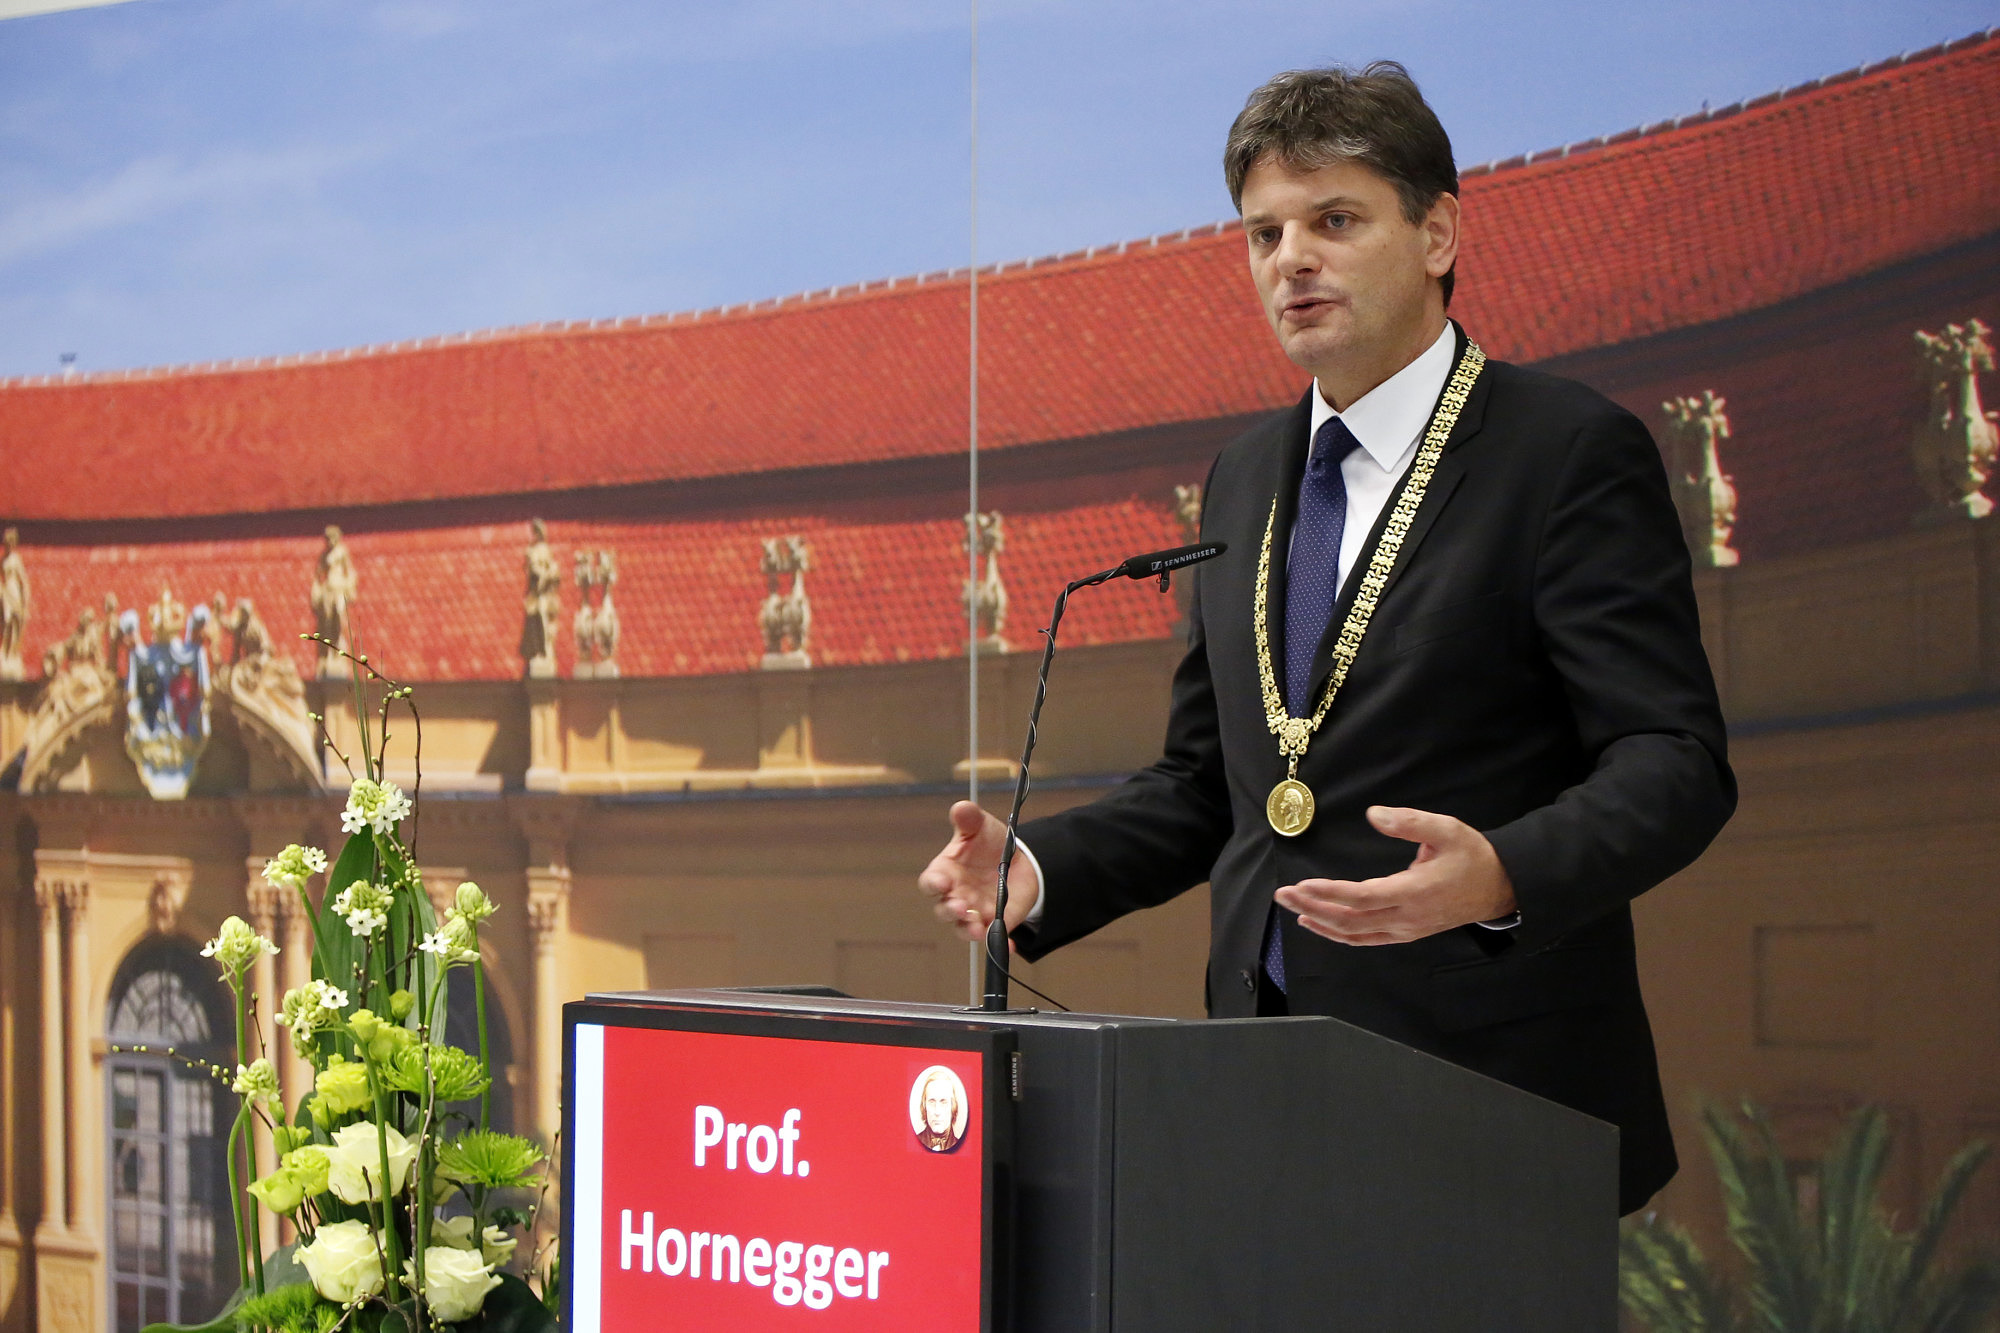 Prof. Dr. J. Hornegger